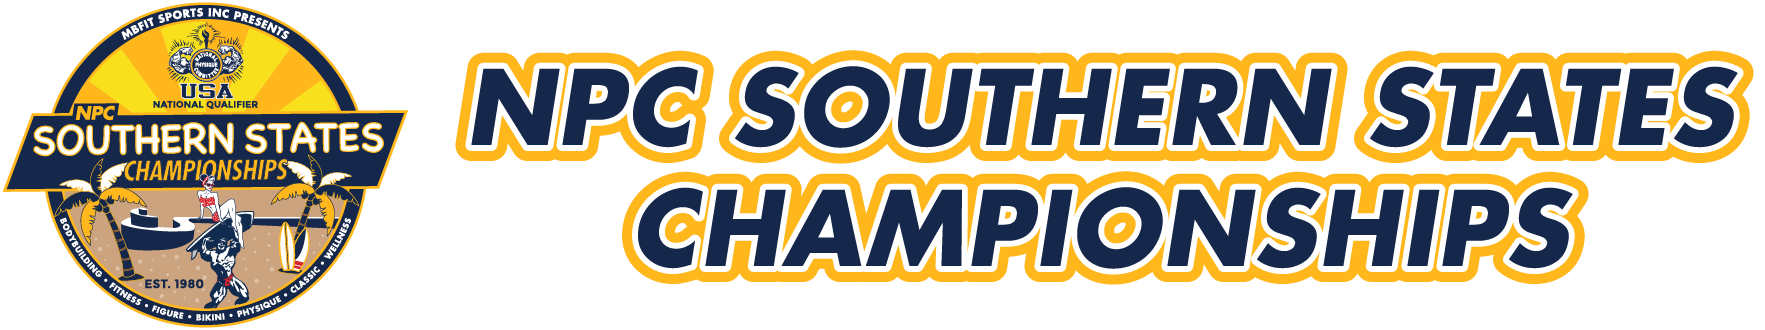 NPC Southern States Championships